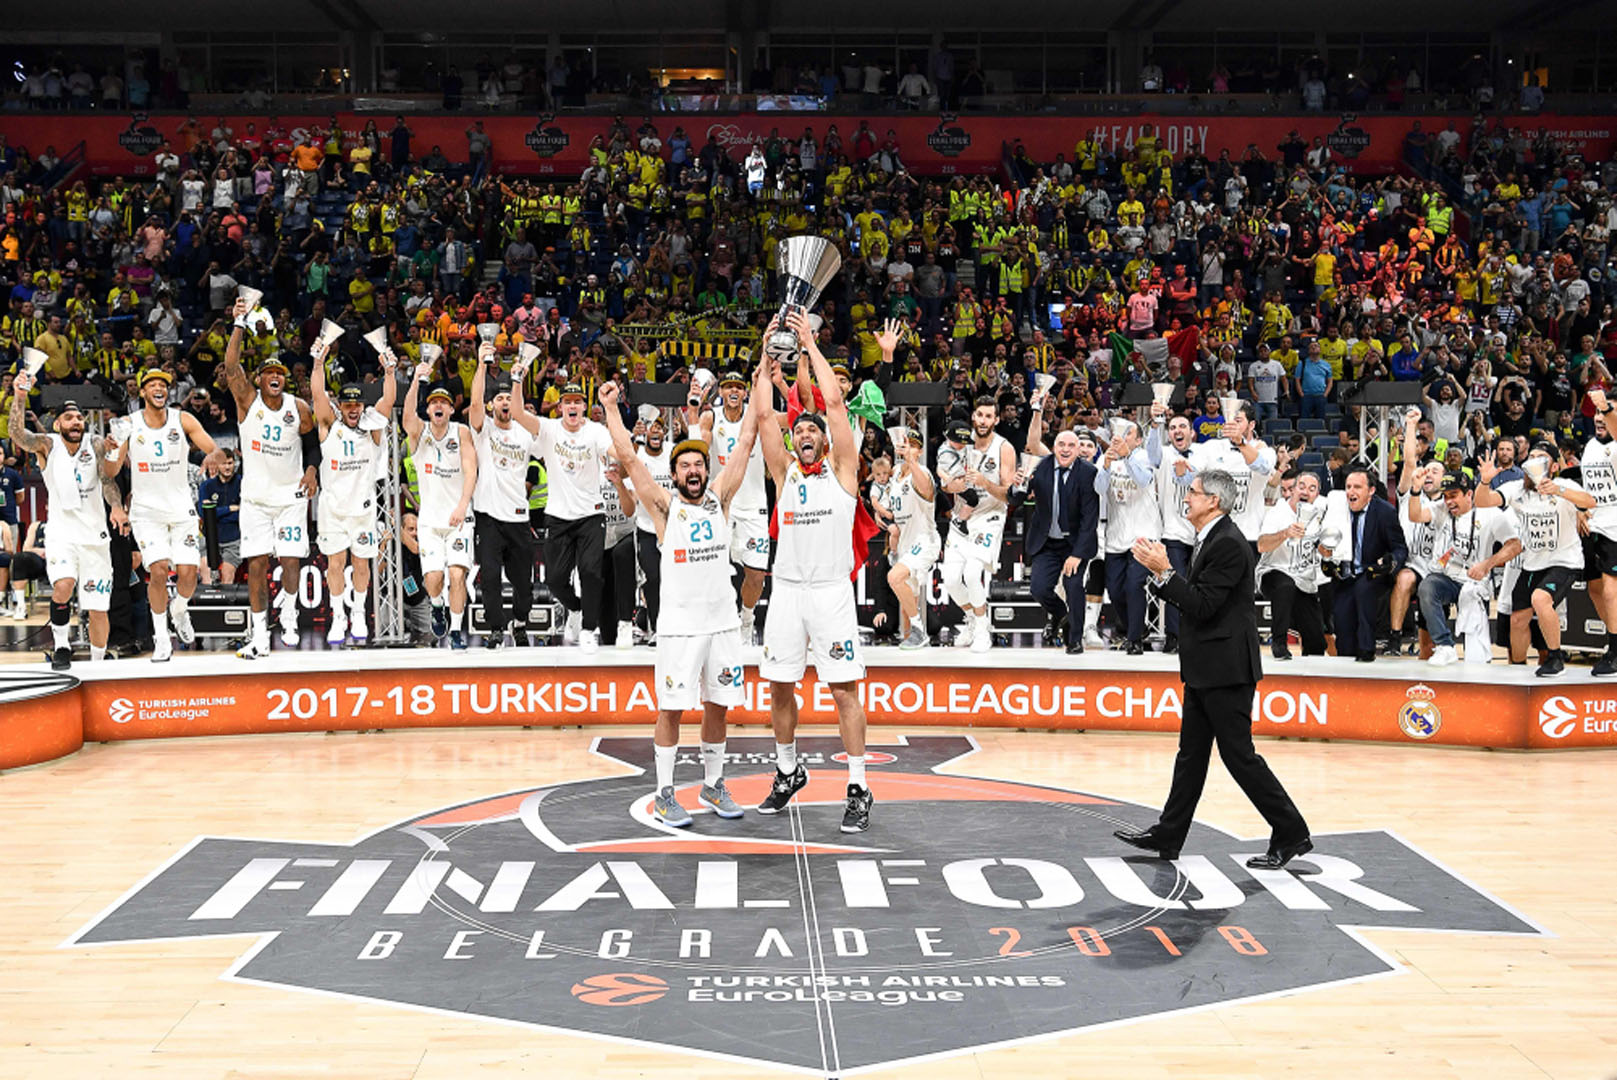 Son dakika! EuroLeague'de Final Four'un yeni adresi Belgrad oldu!